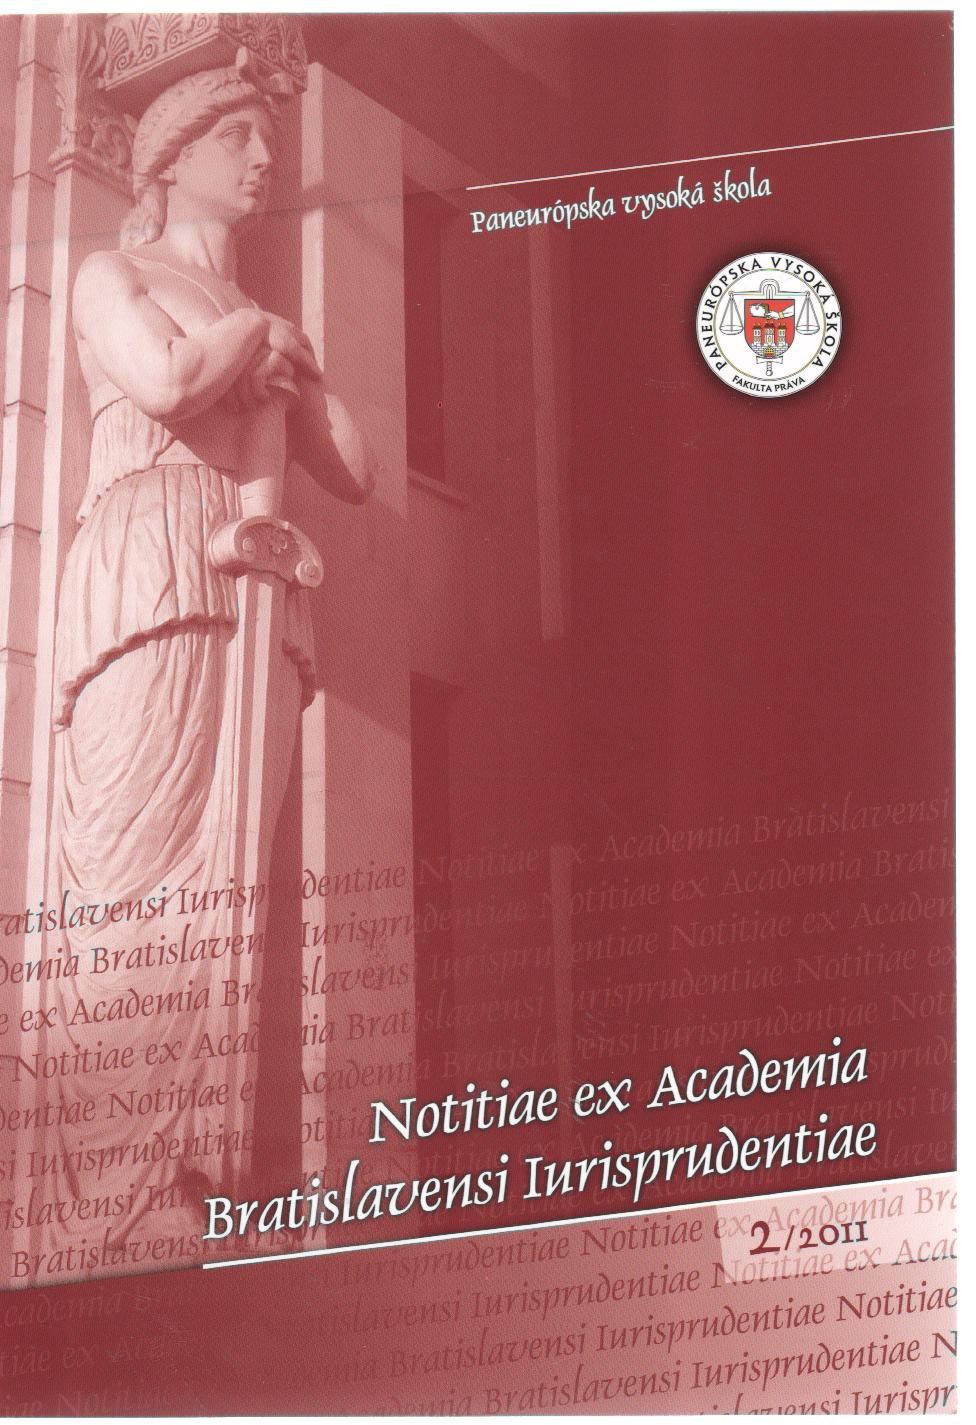 Notitiae ex Academia Bratislavensi Iurisprudentiae 2/2011